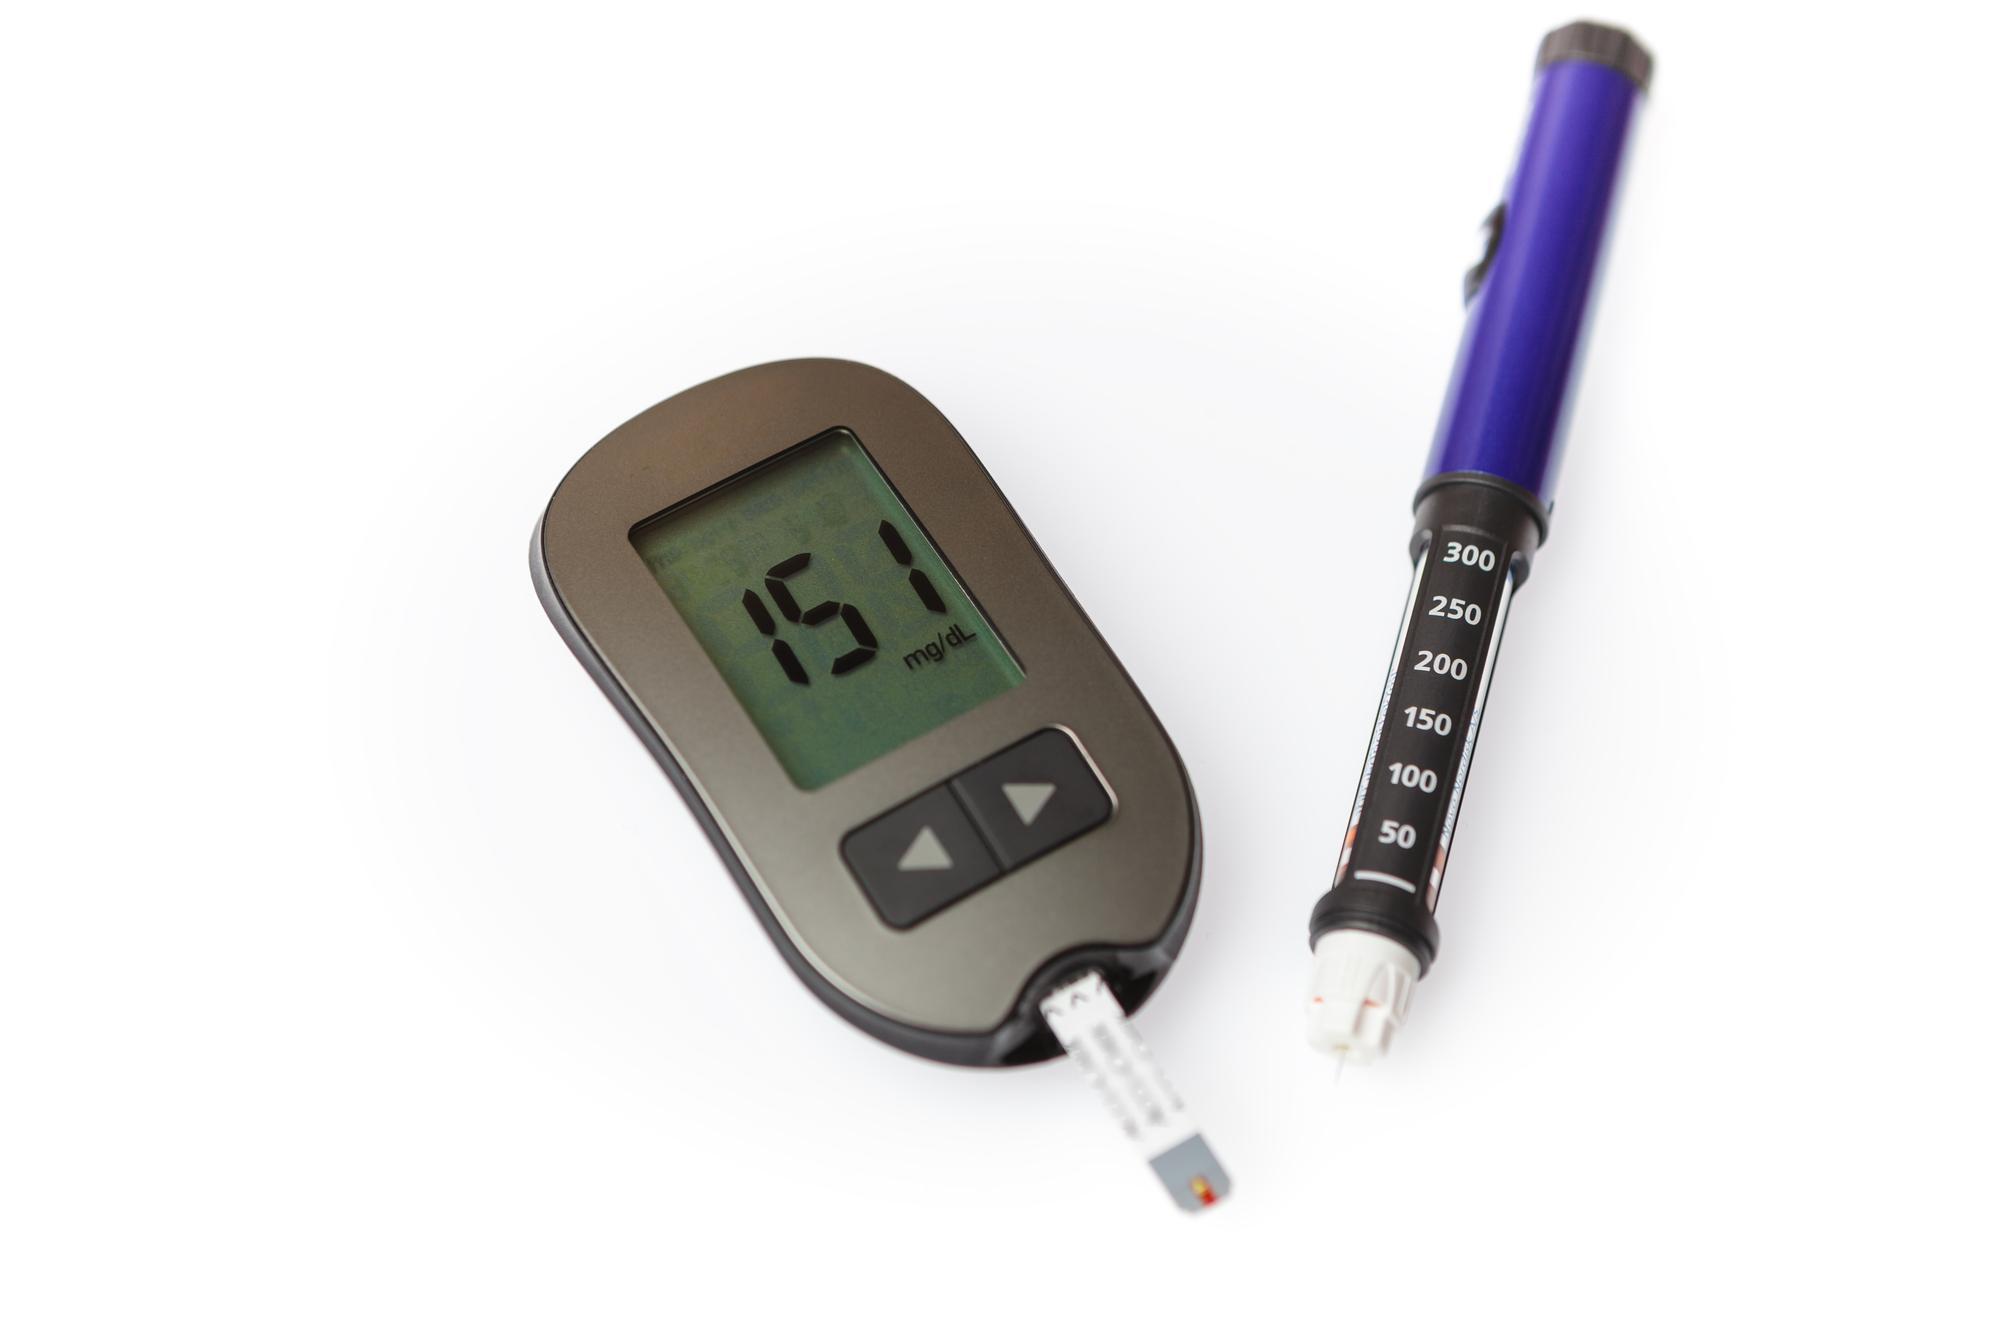 Hiperglikemia – objawy, leczenie, pierwsza pomoc. Jak postępować przy podwyższonym poziomie cukru we krwi?